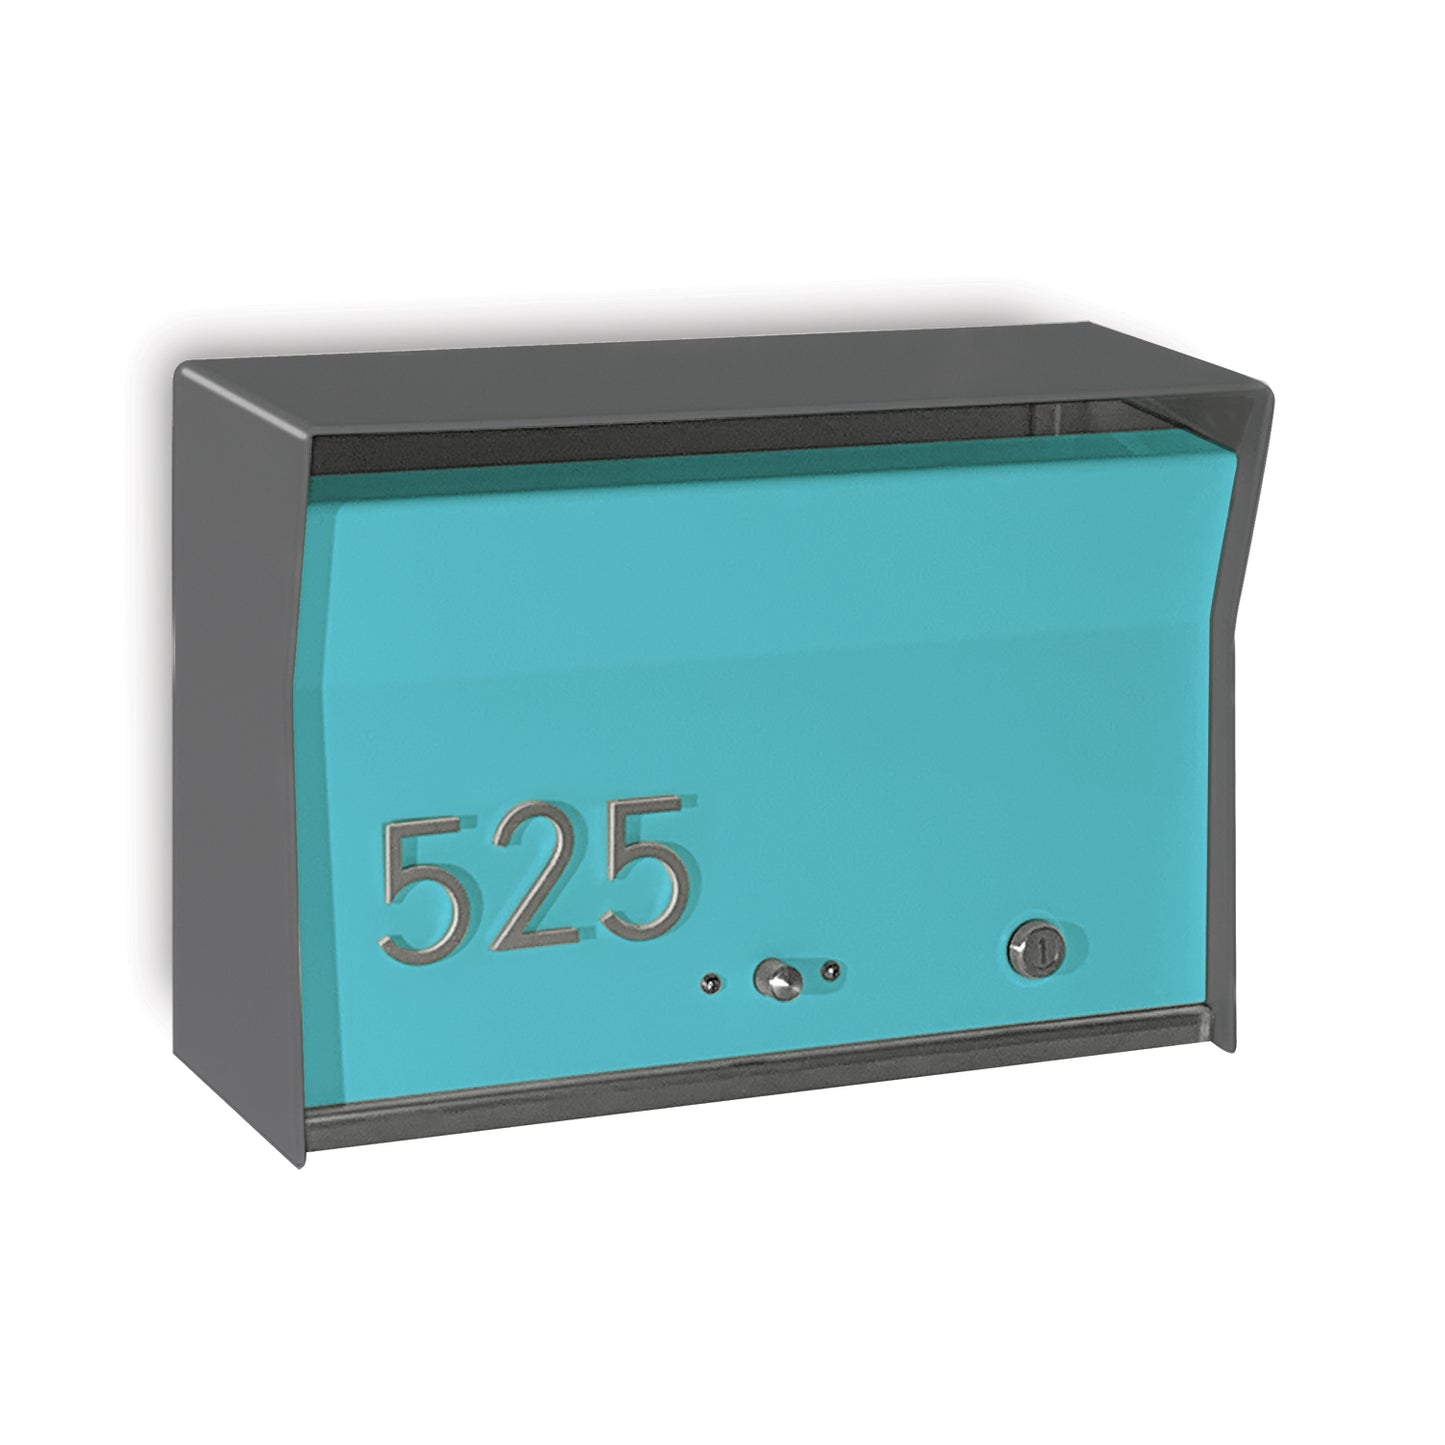 RetroBox Locking Wall Mount Mailbox in DESIGNER Grey